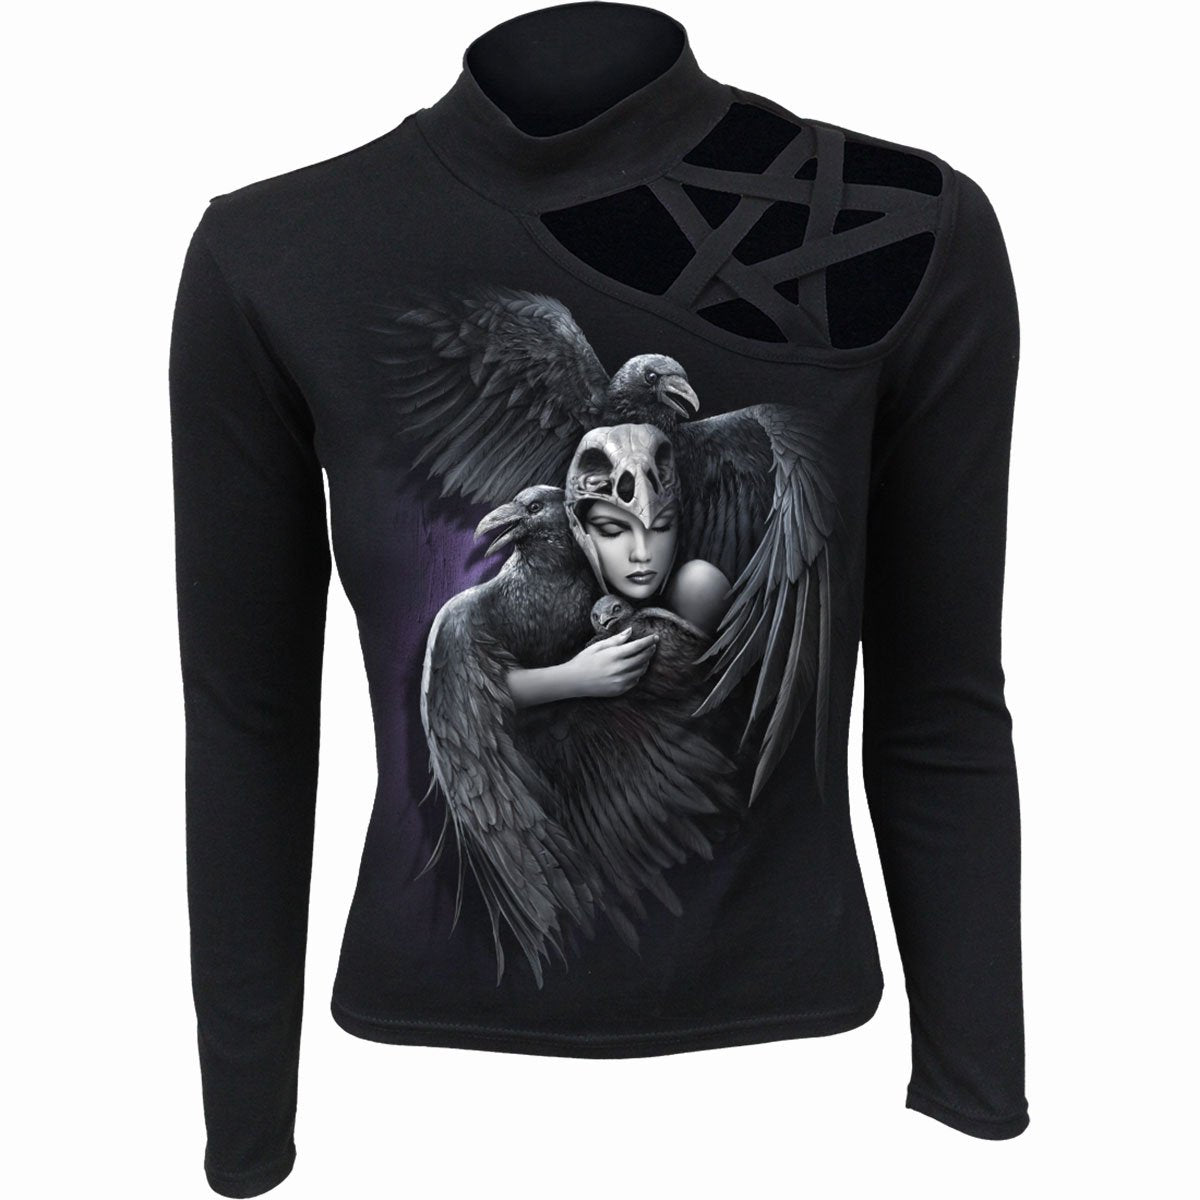 Spiral direct guardian angels Pentagram Shoulder Long sleeve Top gothic new